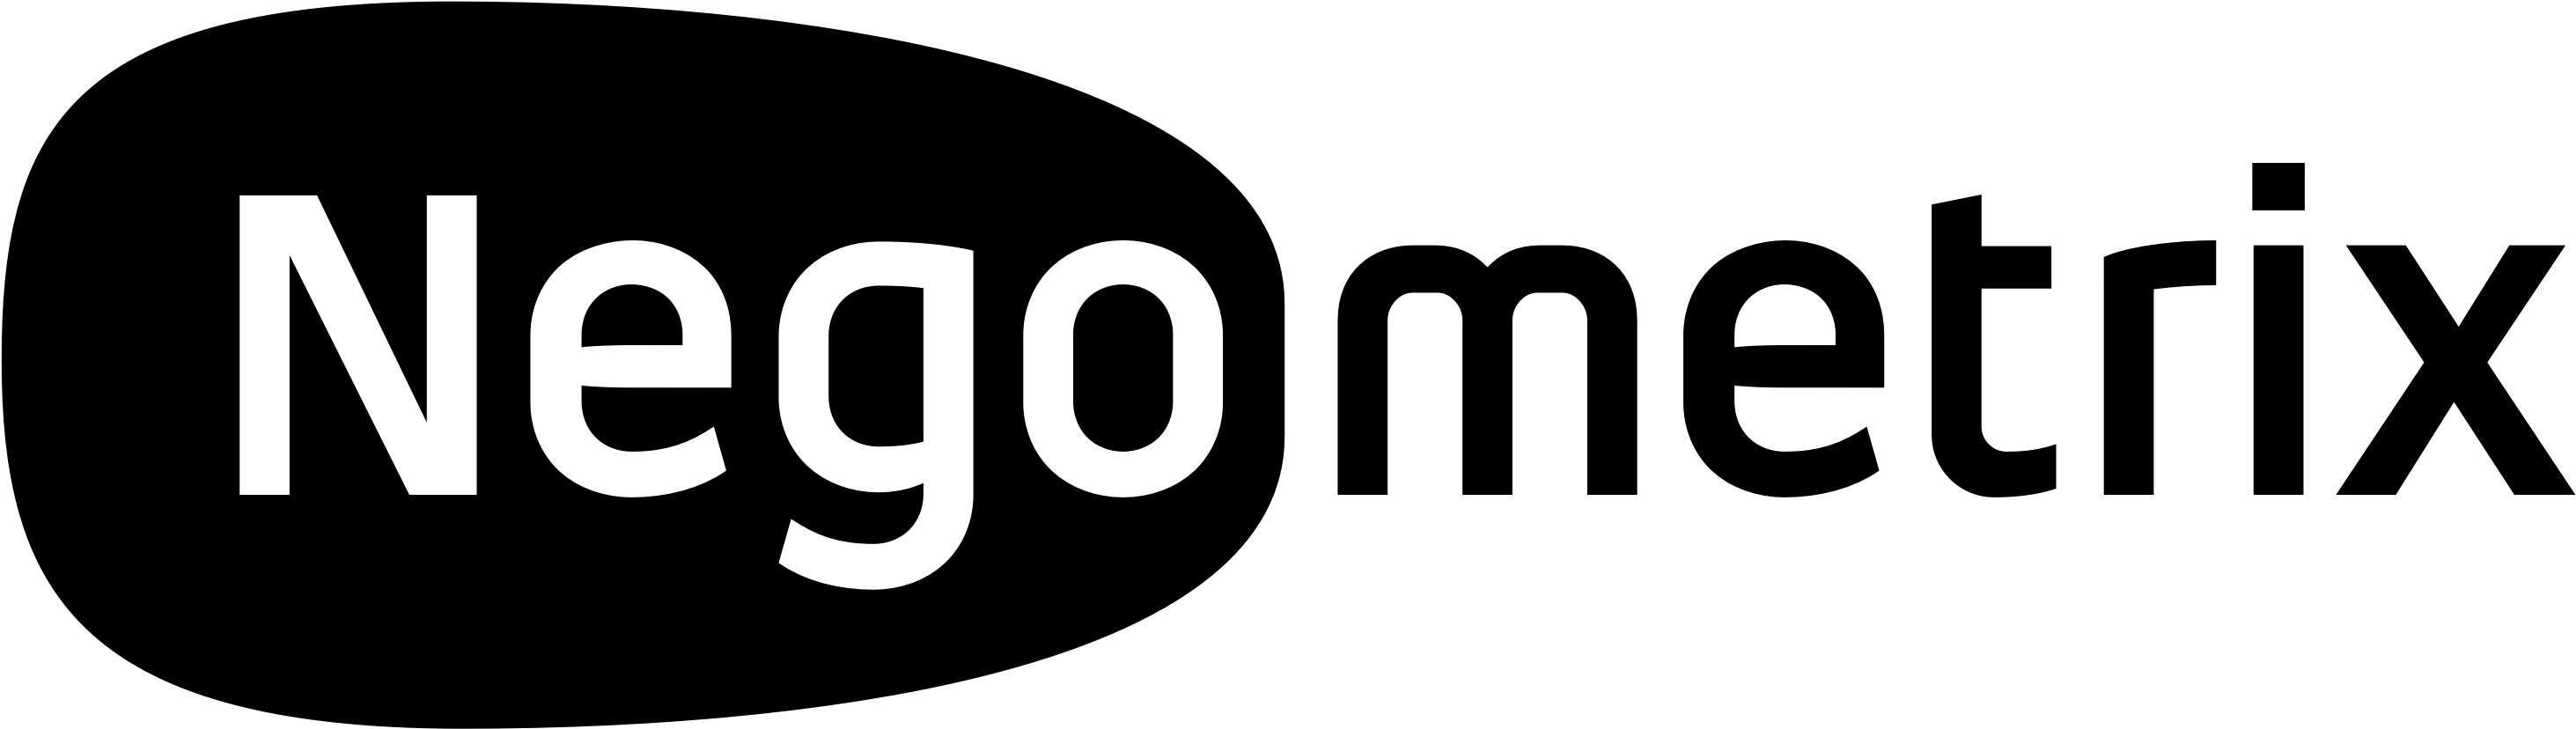 Negometrix Logo Black 2017